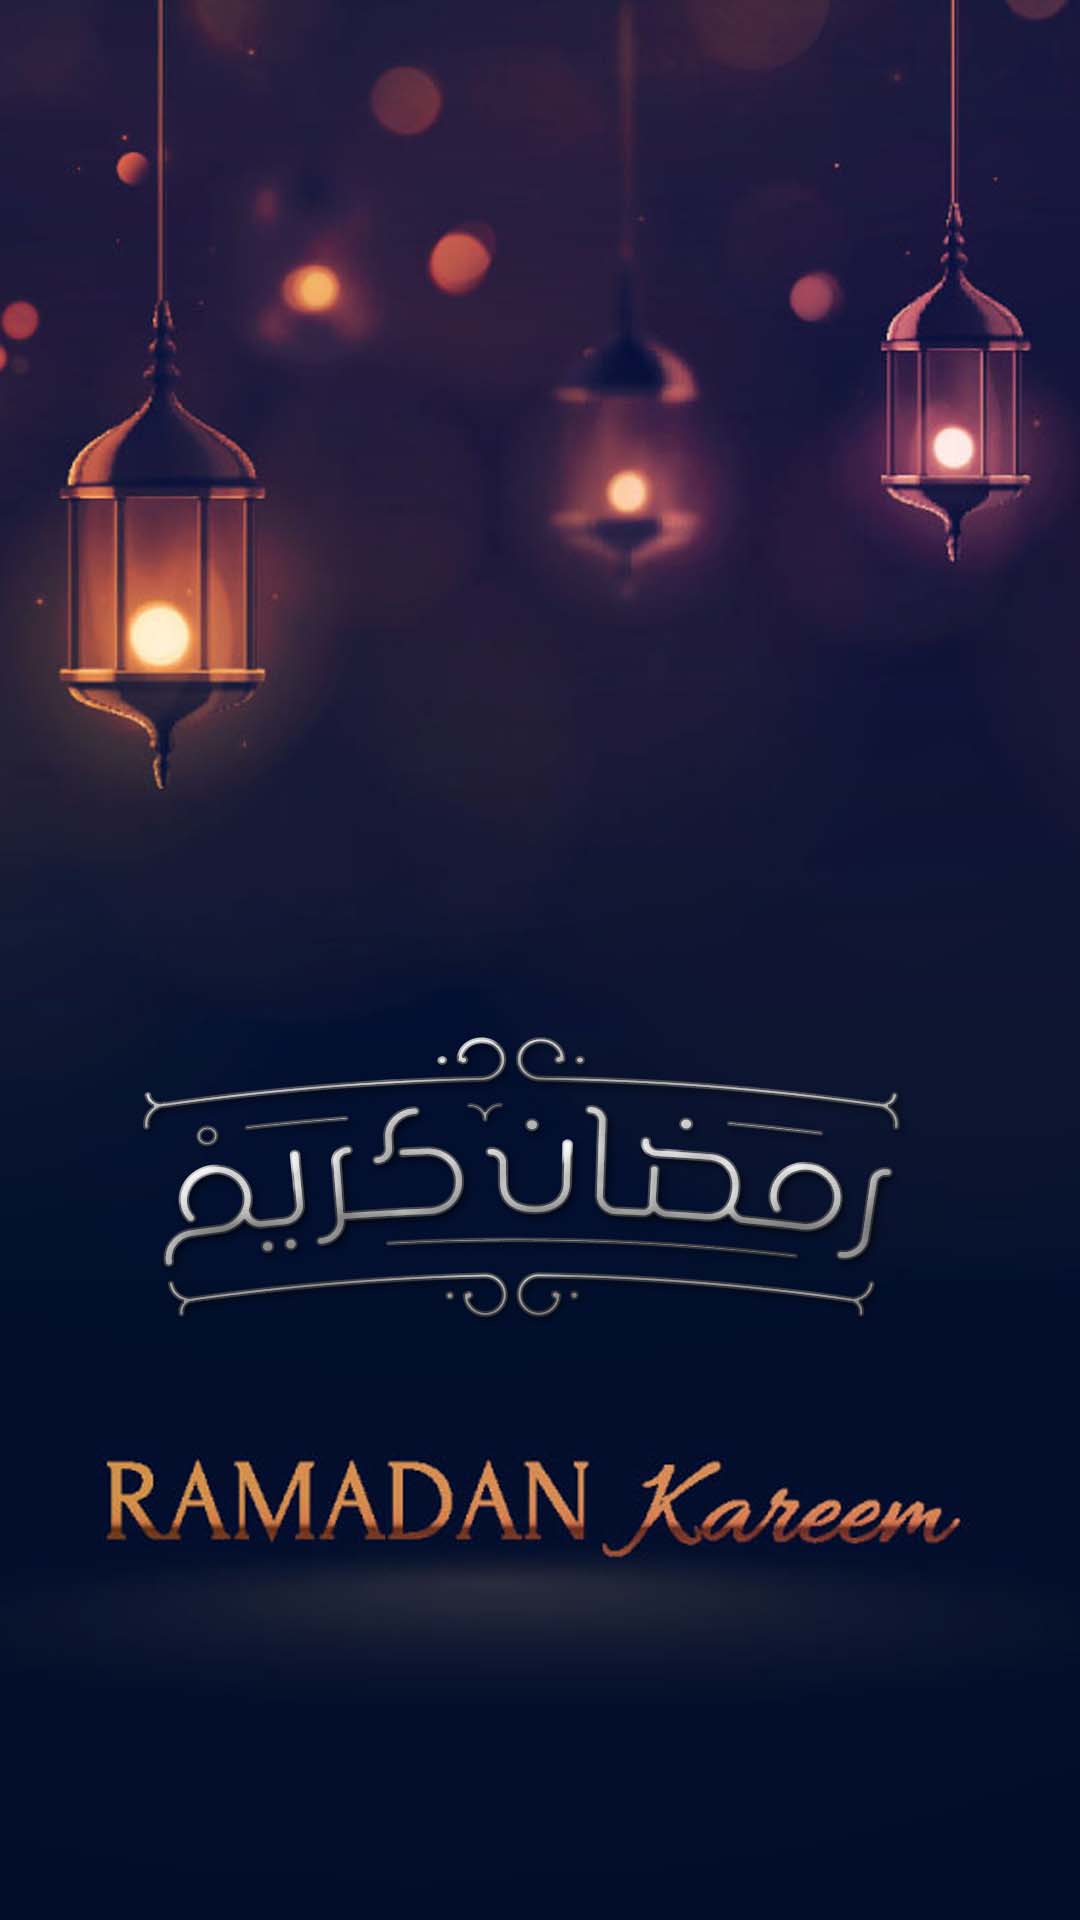 اجمل خلفيات الموبايل بمناسبه شهر رمضان 2020 HD-16